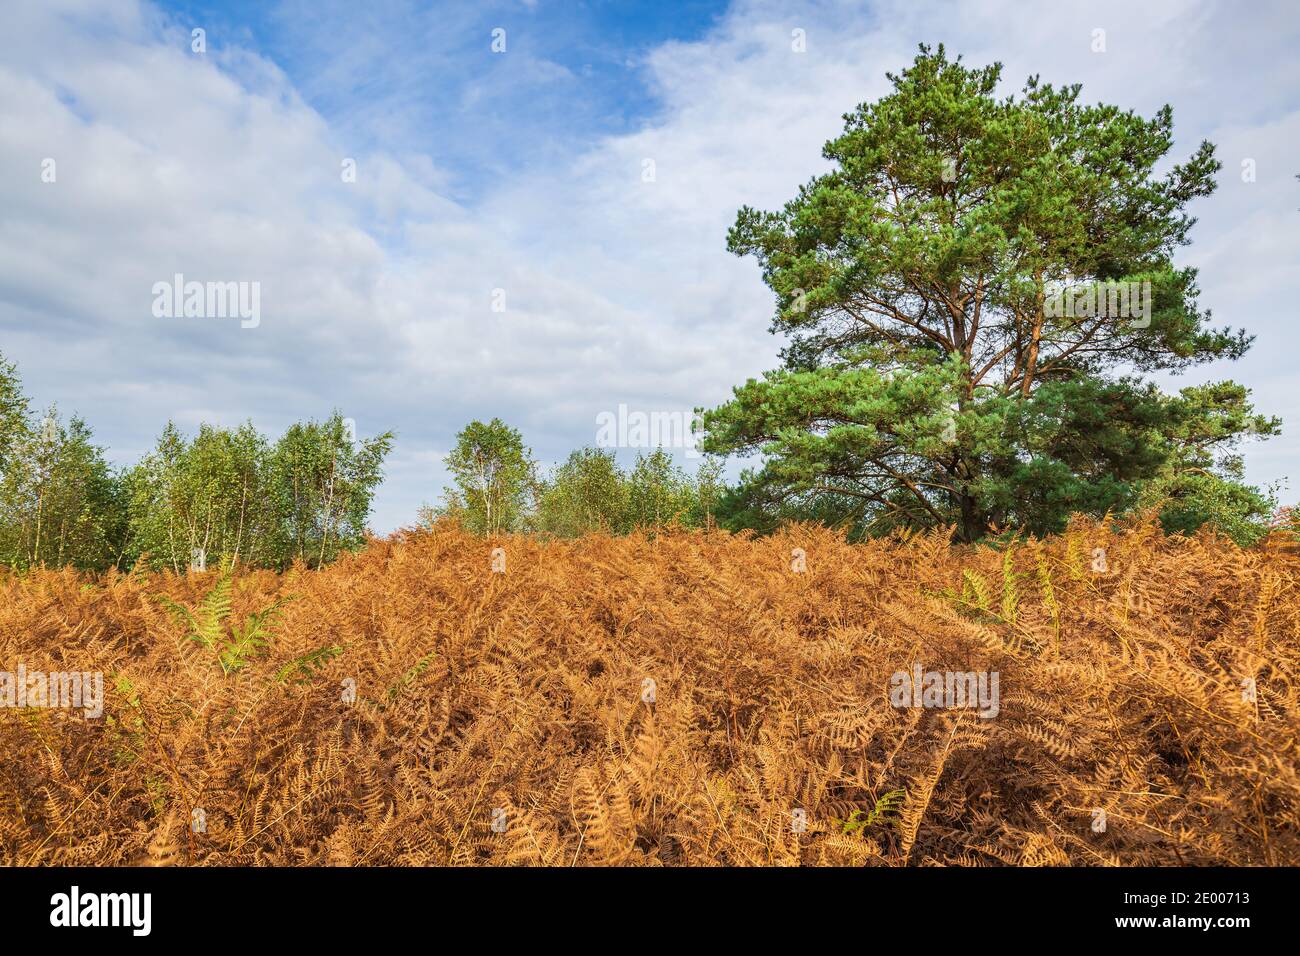 Moor, Torf Landschaft am Nationalpark De Groote Peel, Limburg, Niederlande. Herbst Landschaft unter einem sonnigen blauen Himmel. Natürliches Licht, hohe Dy Stockfoto